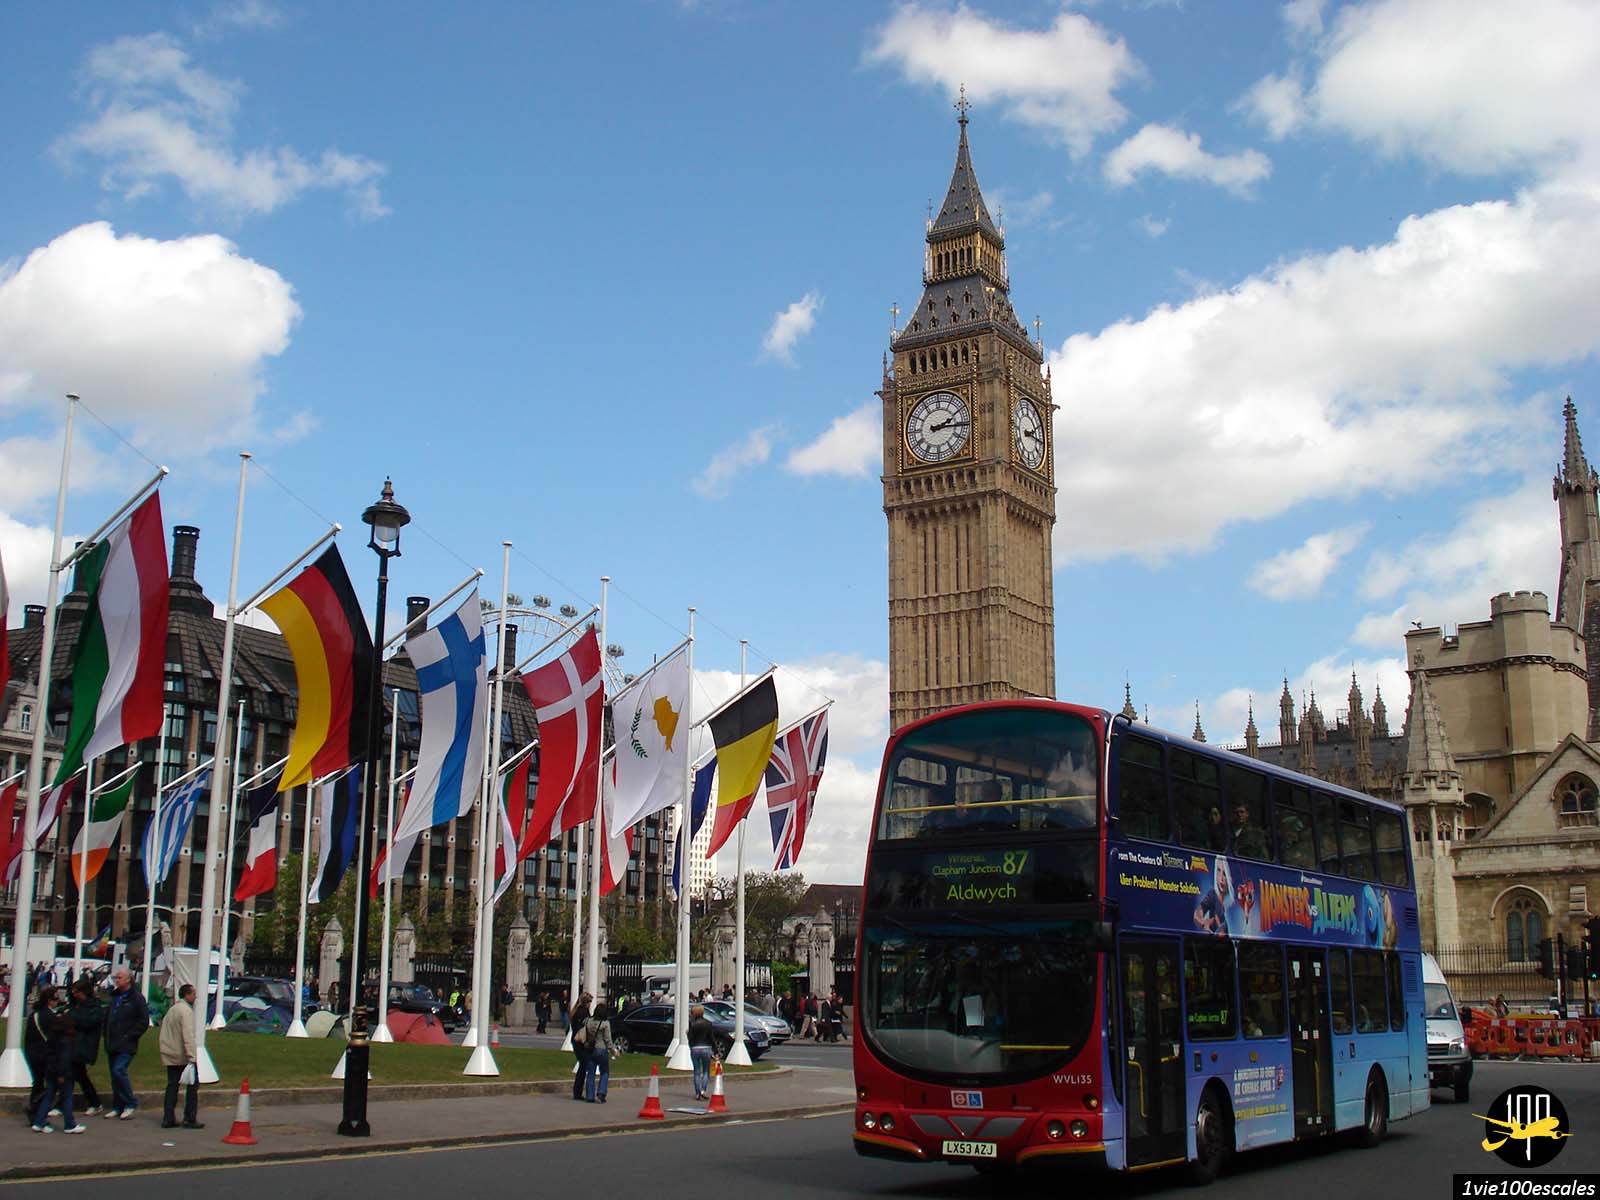 Parliament square situé à deux pas du palais de westminster fait face à Big Ben à Londres